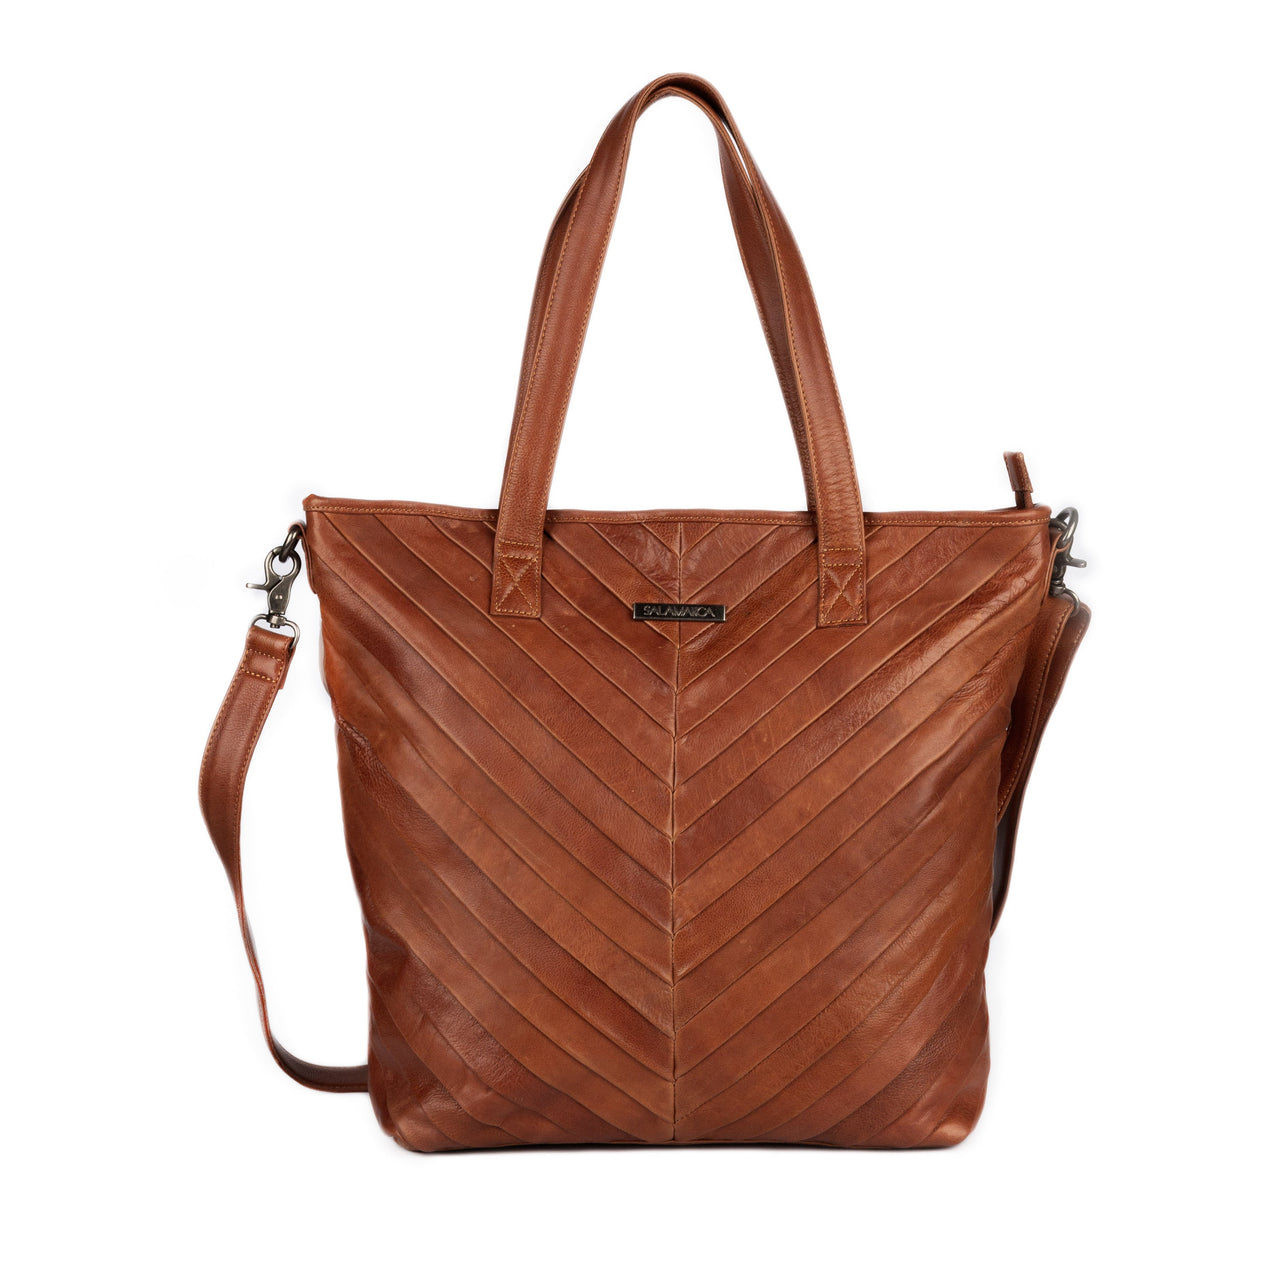 Taree Tote Bag - Light Brown - Tote Bags